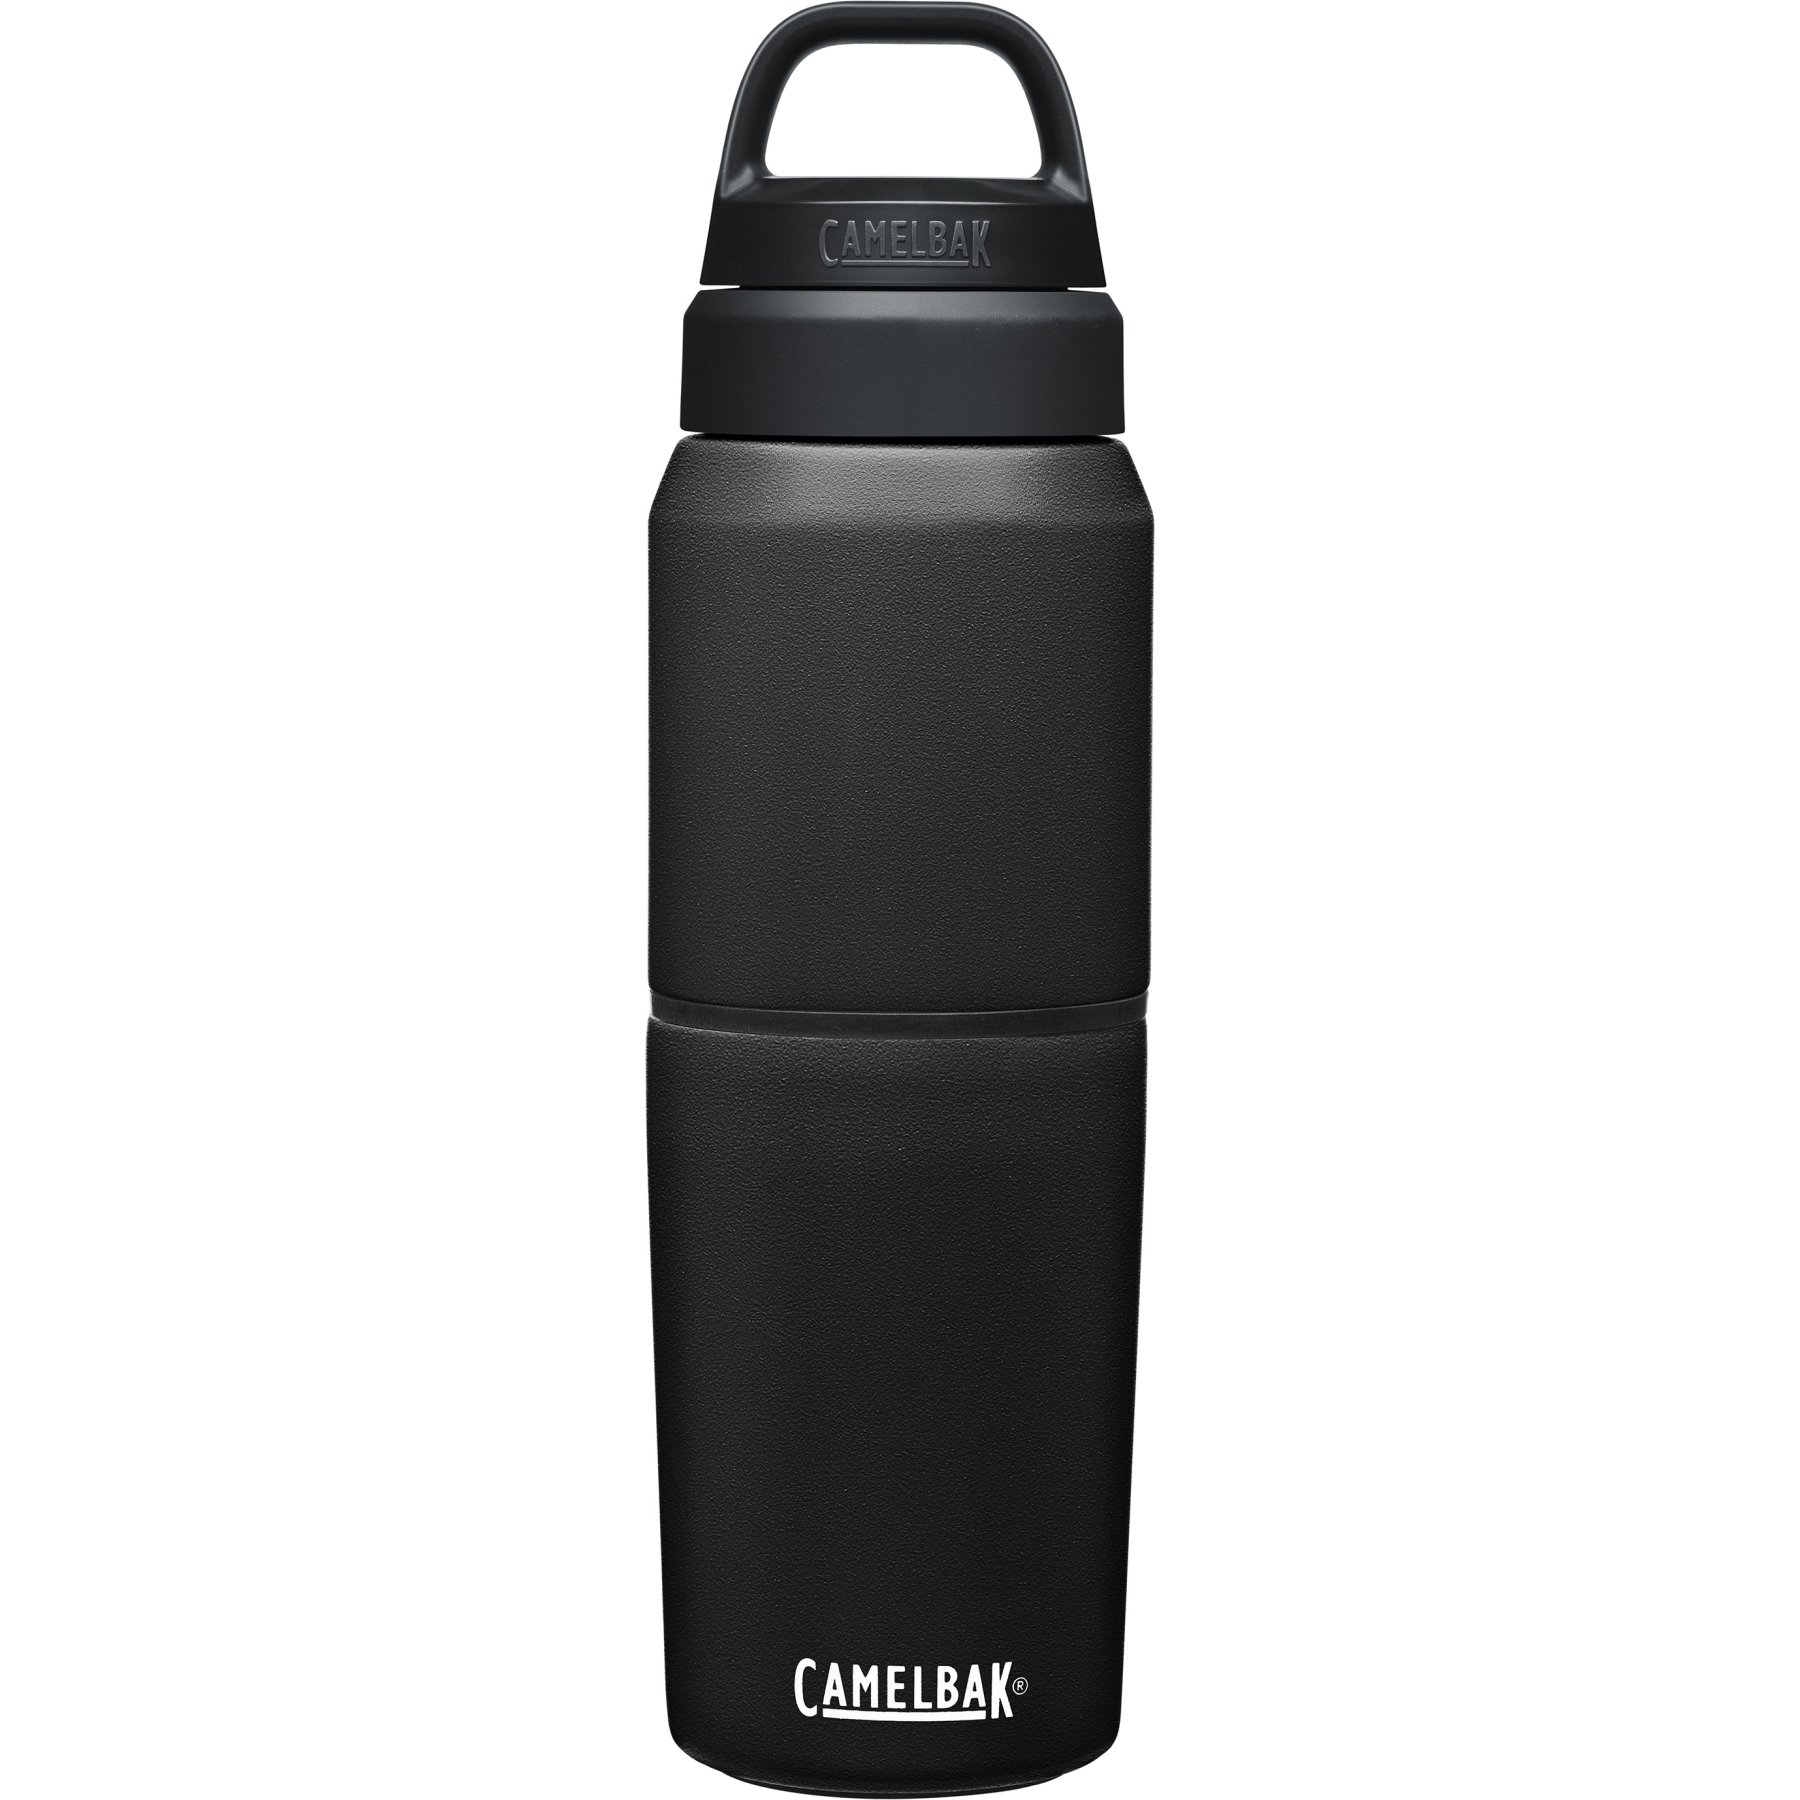 Produktbild von CamelBak Thermo Trinkflasche Multibev 500ml - schwarz